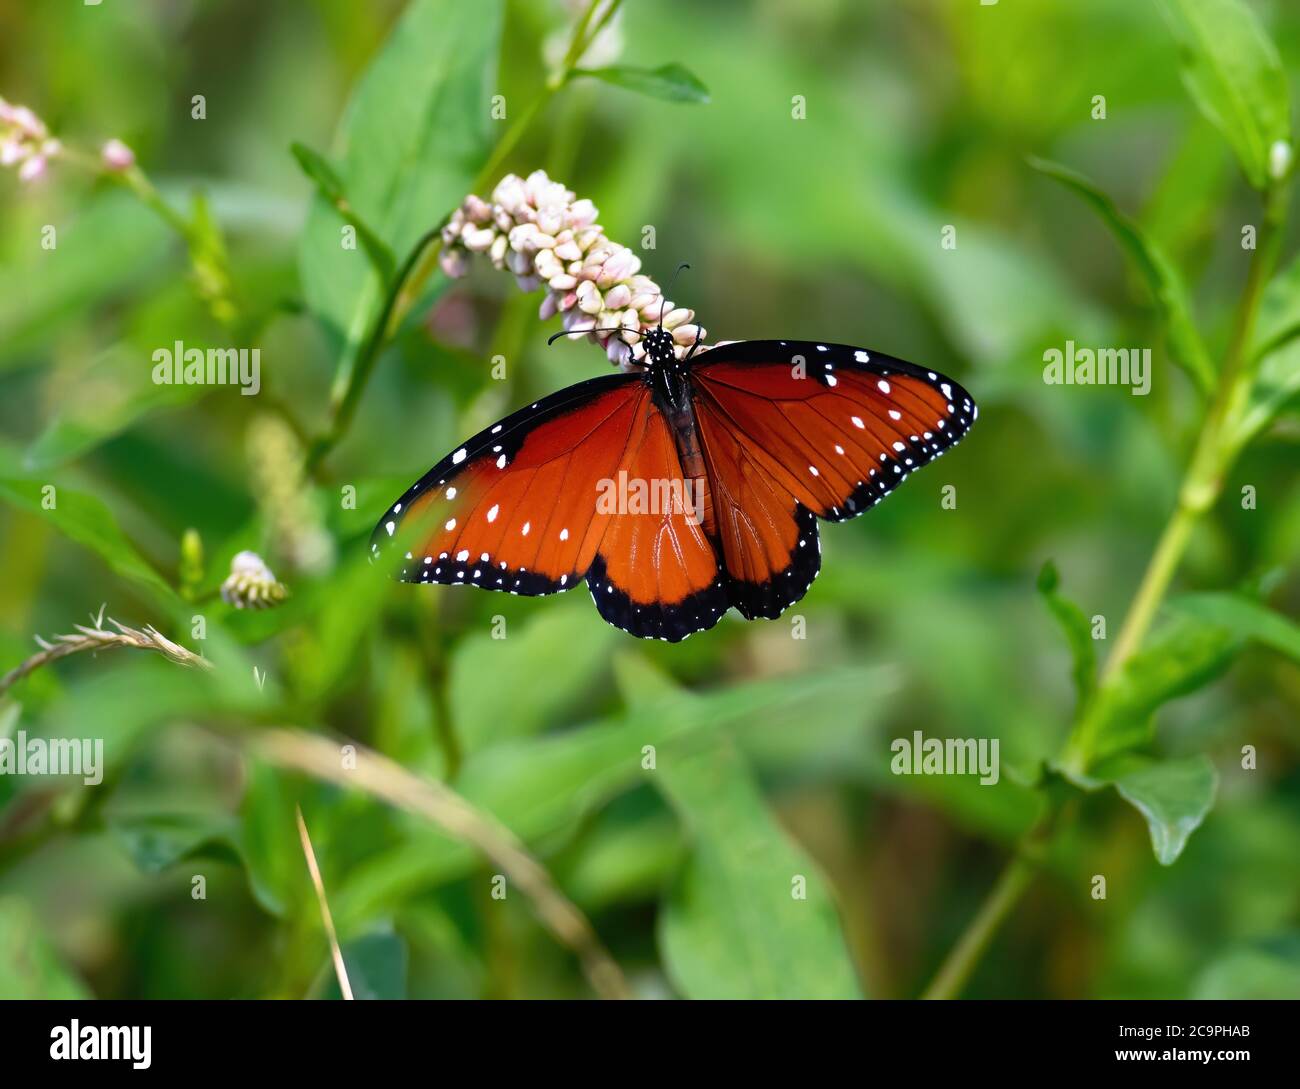 Ein Schmetterling der Königin auf einer wilden Milchkrautpflanze in einer üppigen und lebendigen grünen Umgebung. Stockfoto